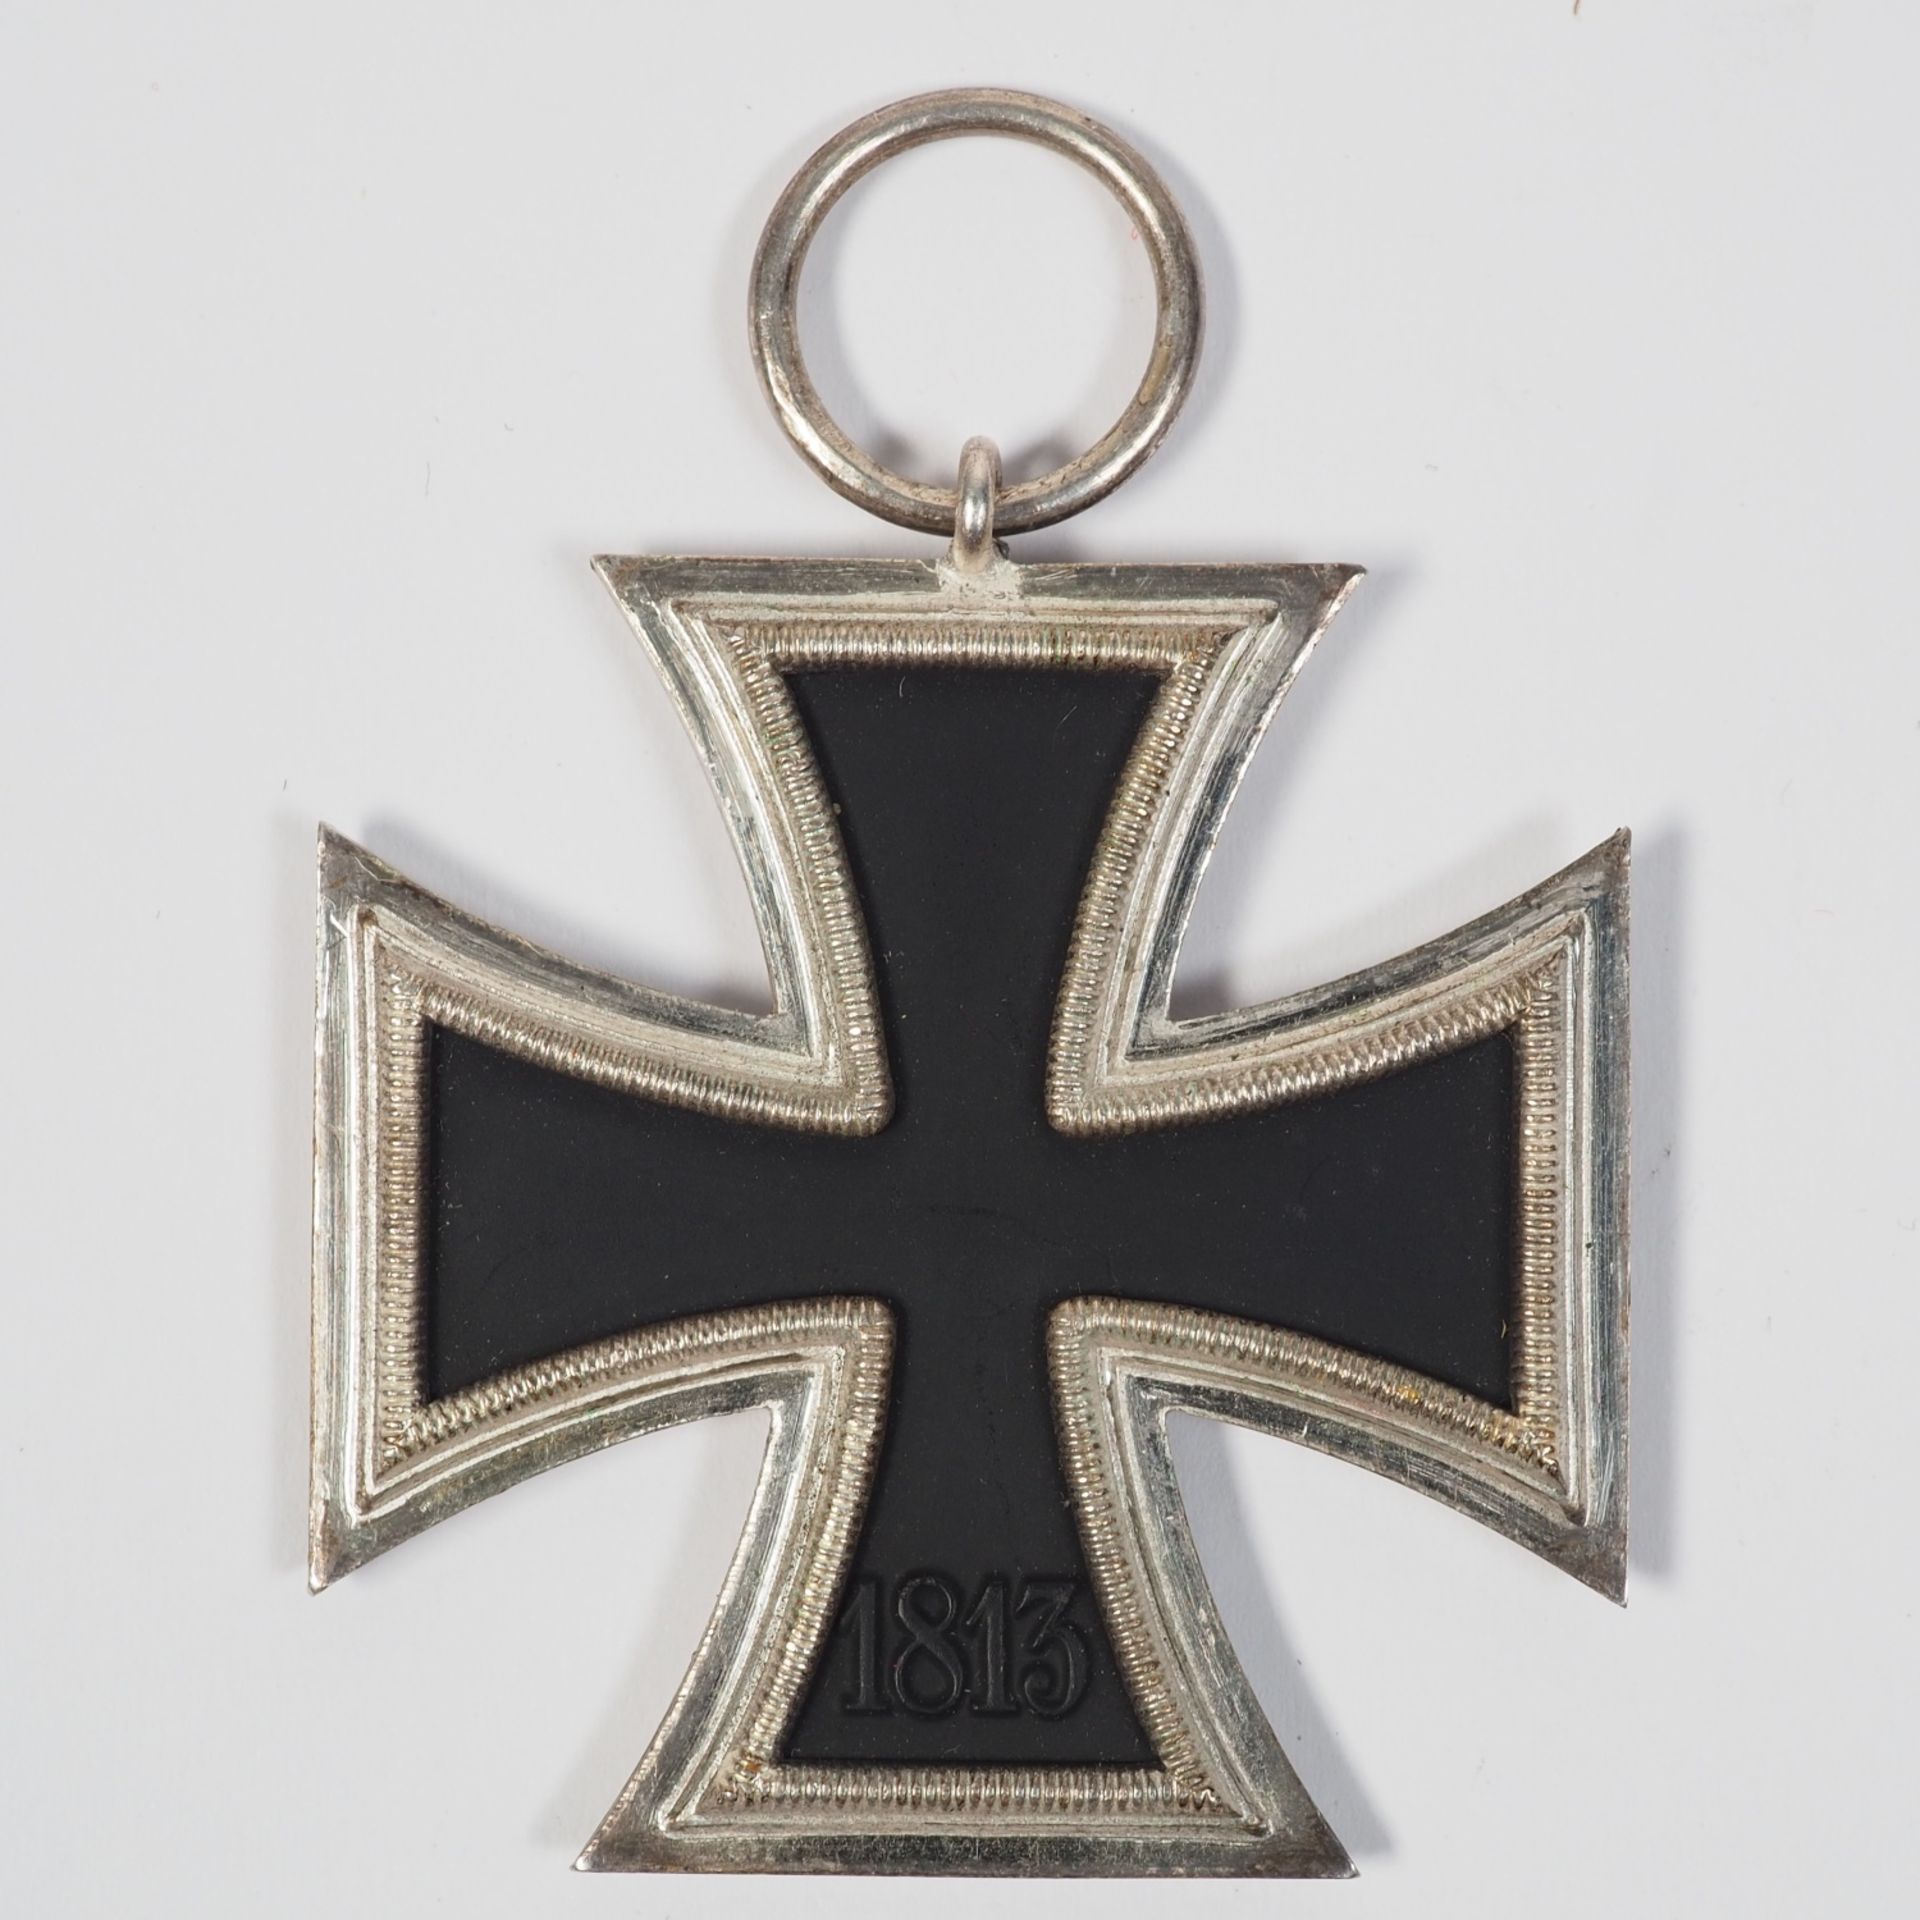 Iron Cross 1939 2nd class - Image 2 of 3